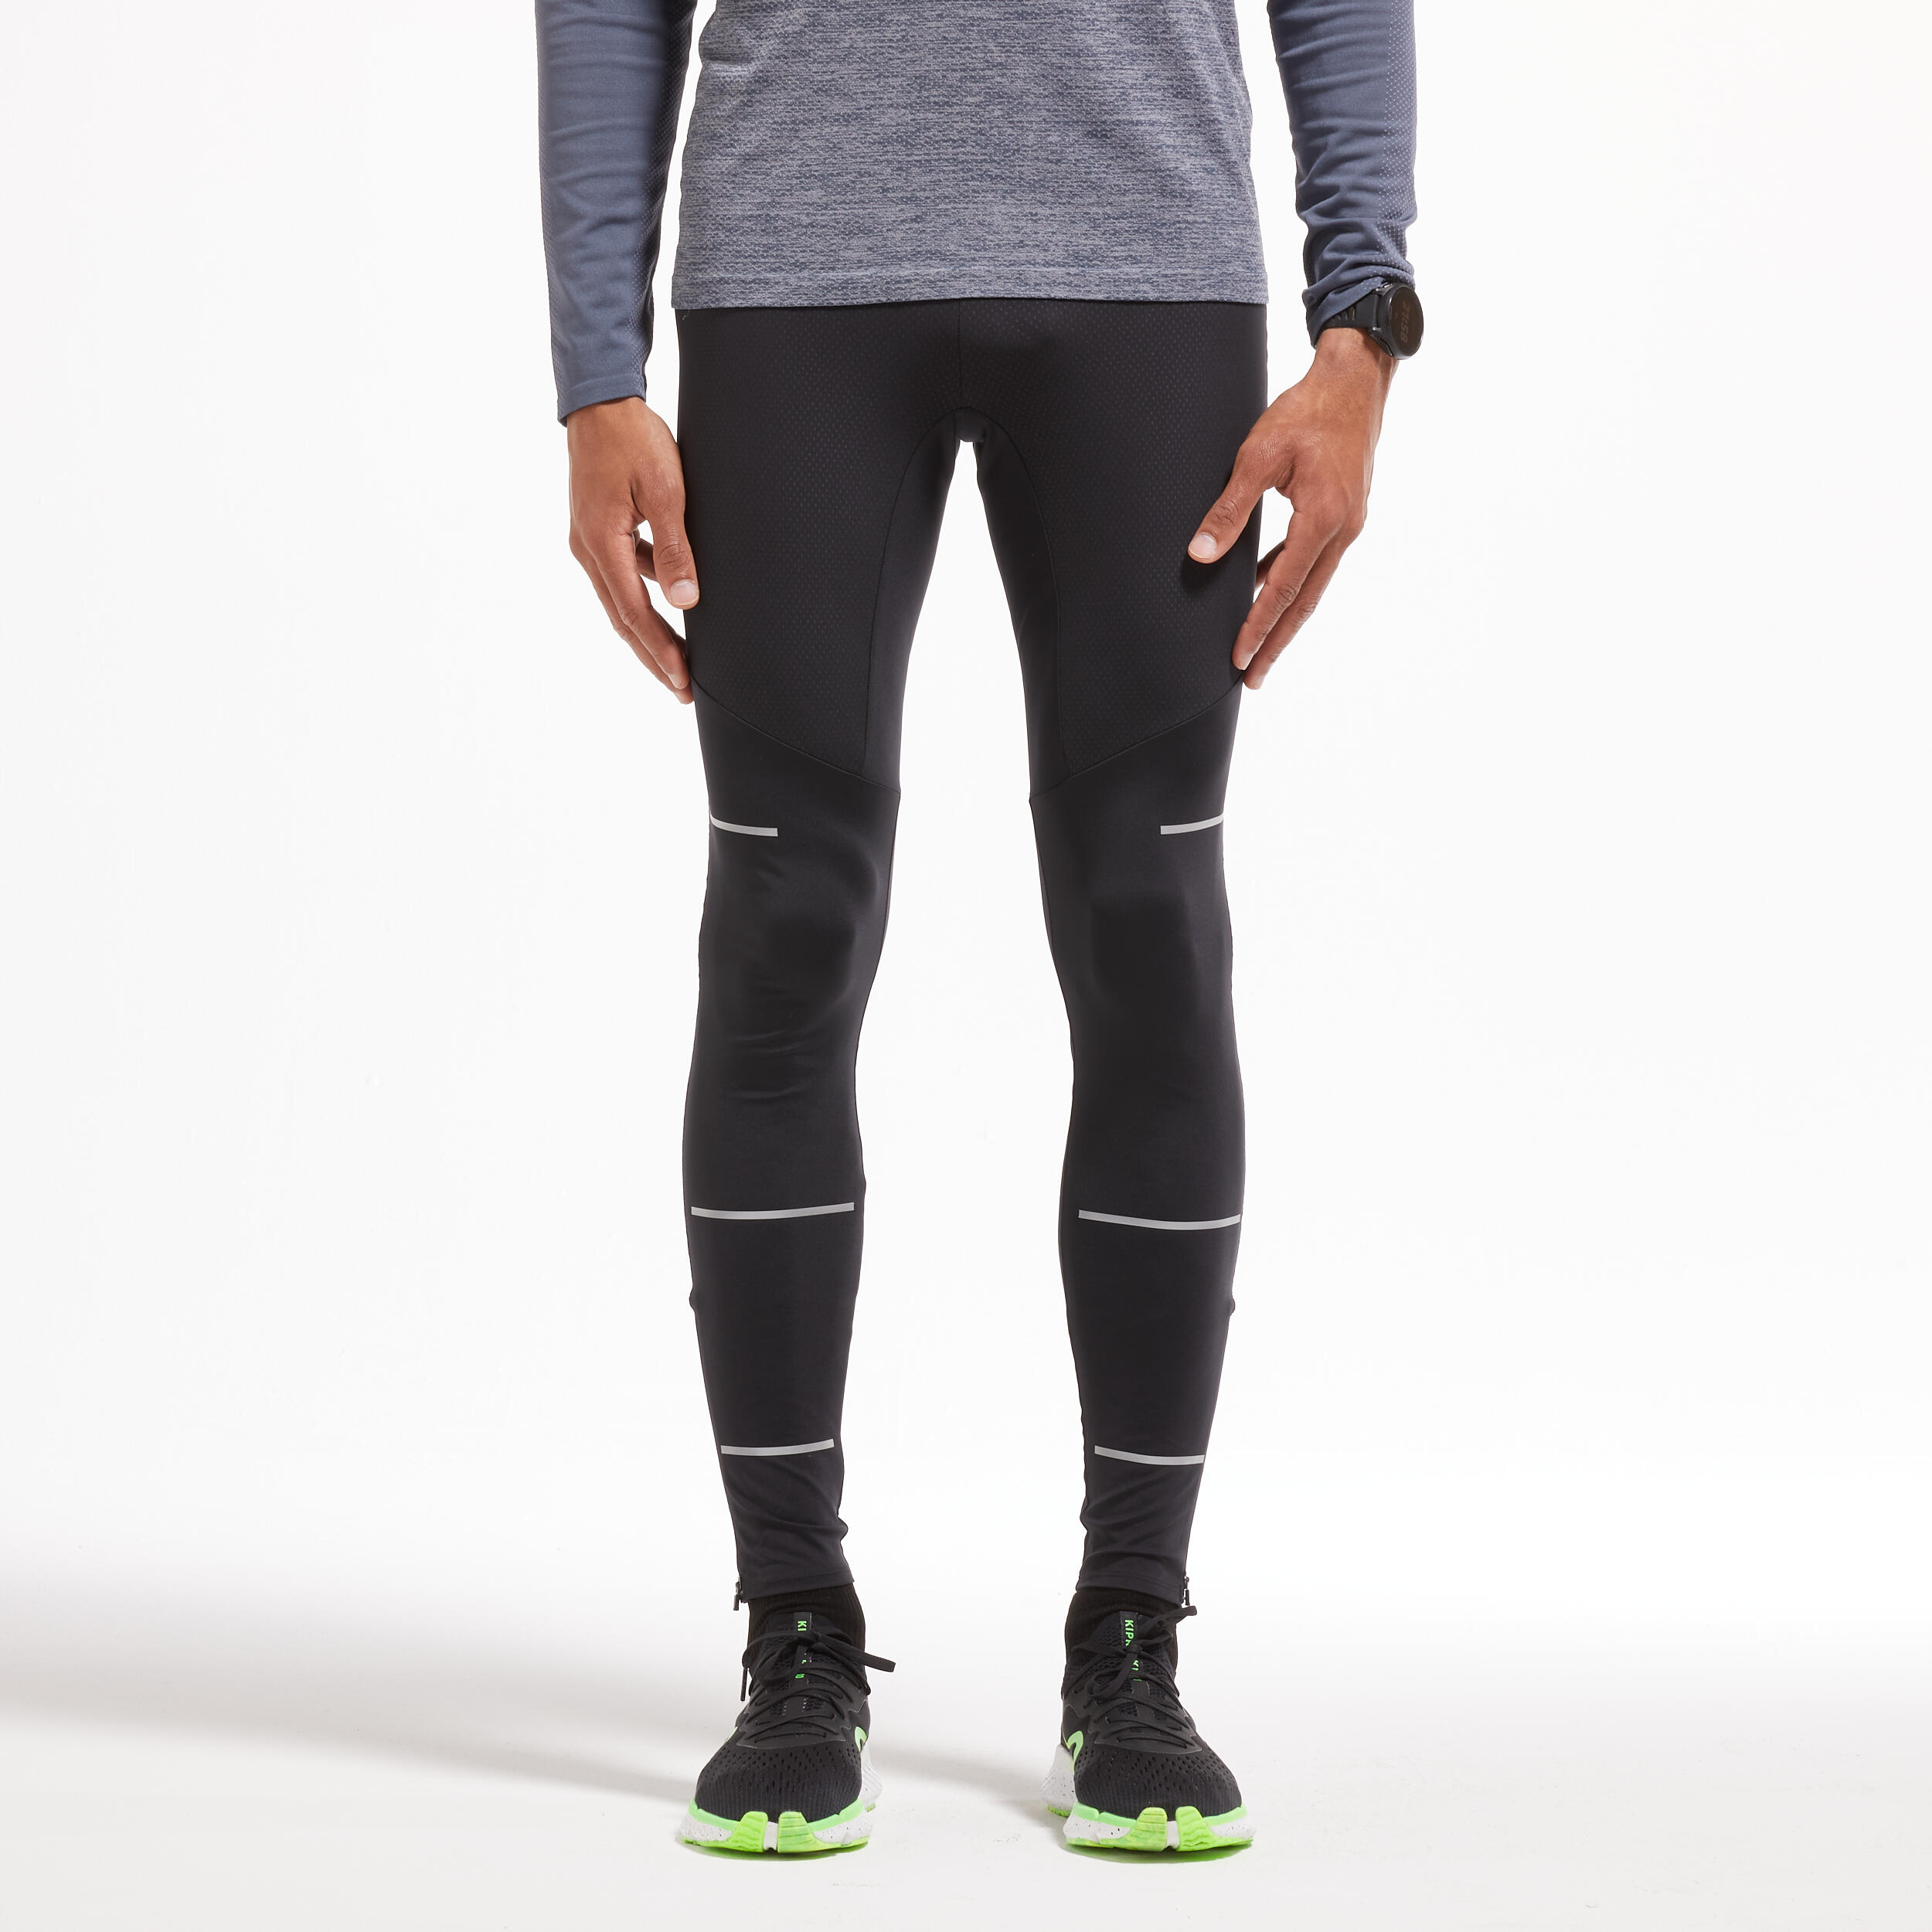 Run Dry running tights - Men - black - Kiprun - Decathlon